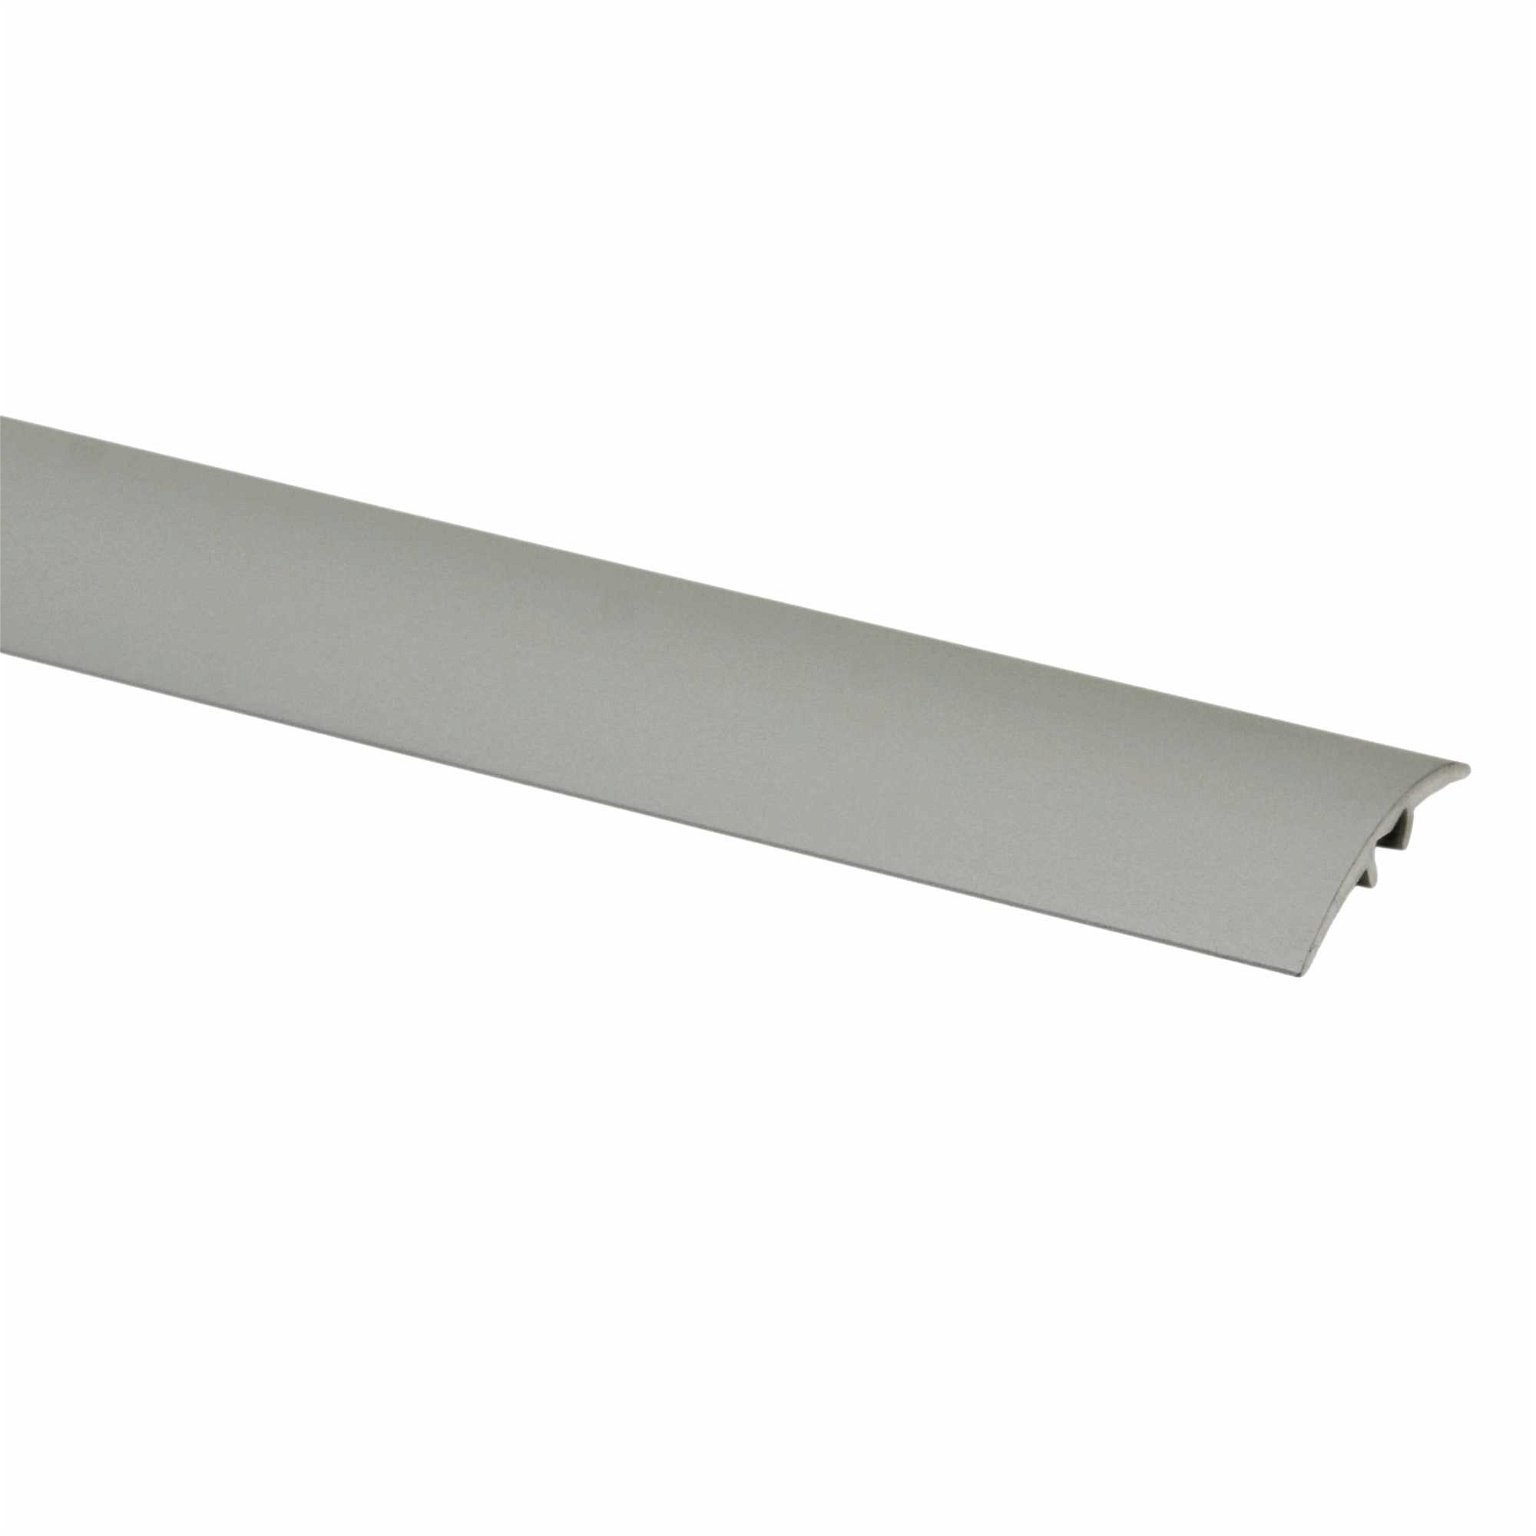 Aliumininė grindų juostelė PR3 A1, sidabro sp., 28 mm pločio, 186 cm ilgio